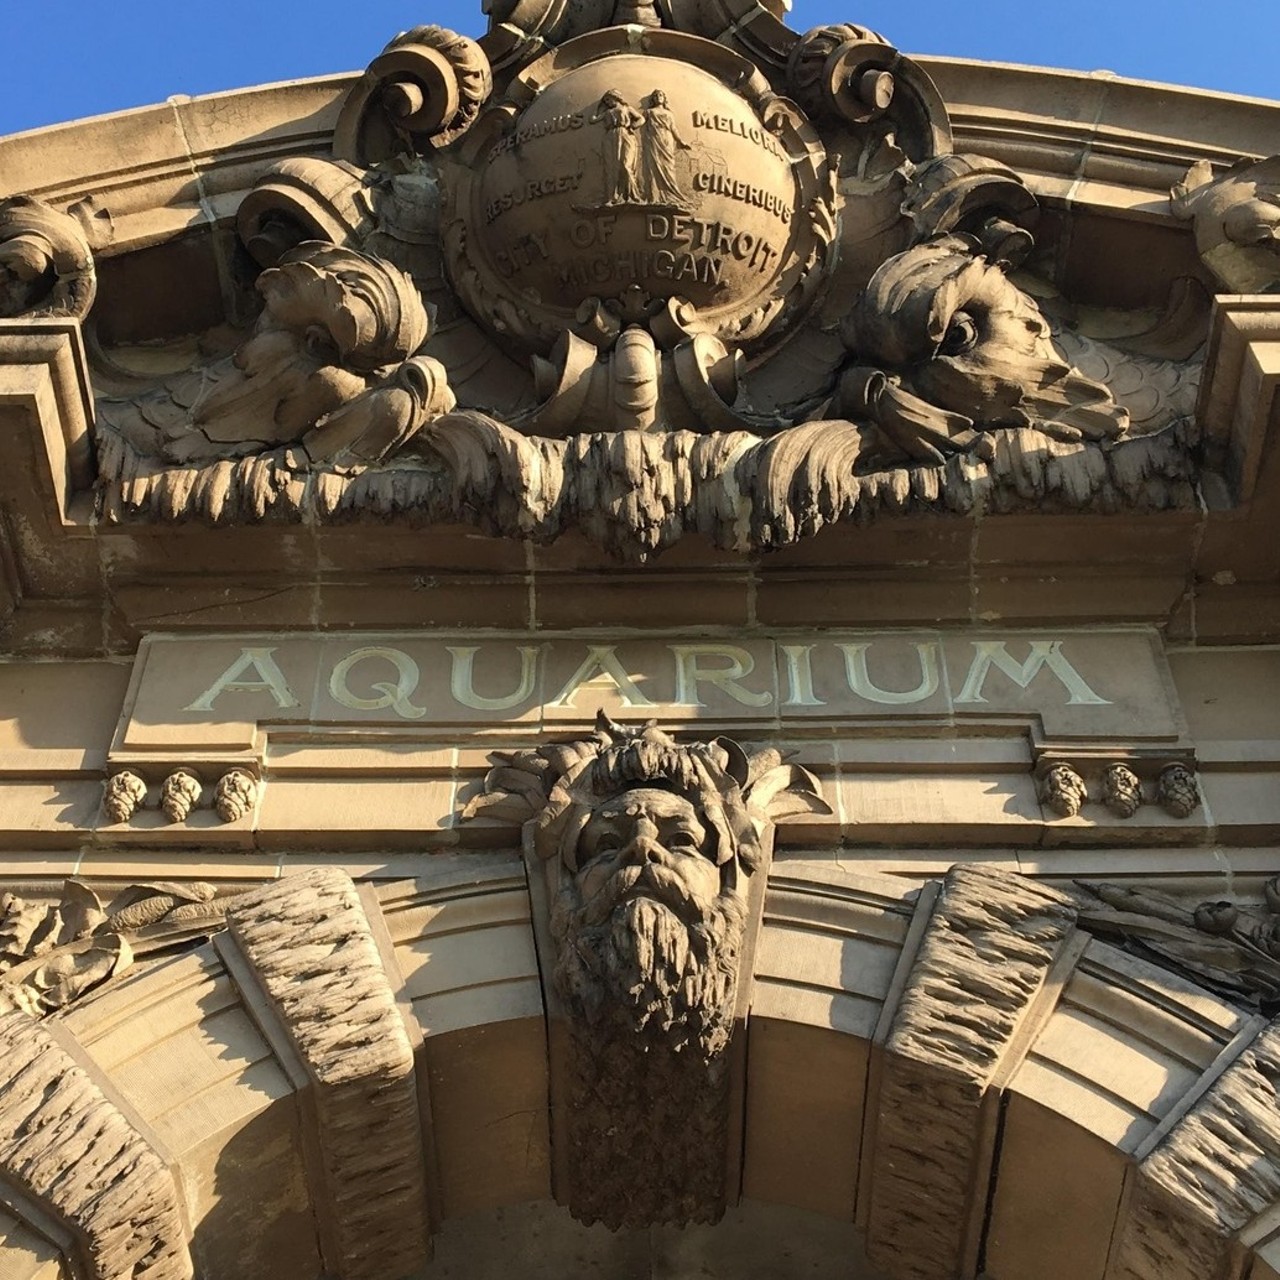 Belle Isle Aquarium